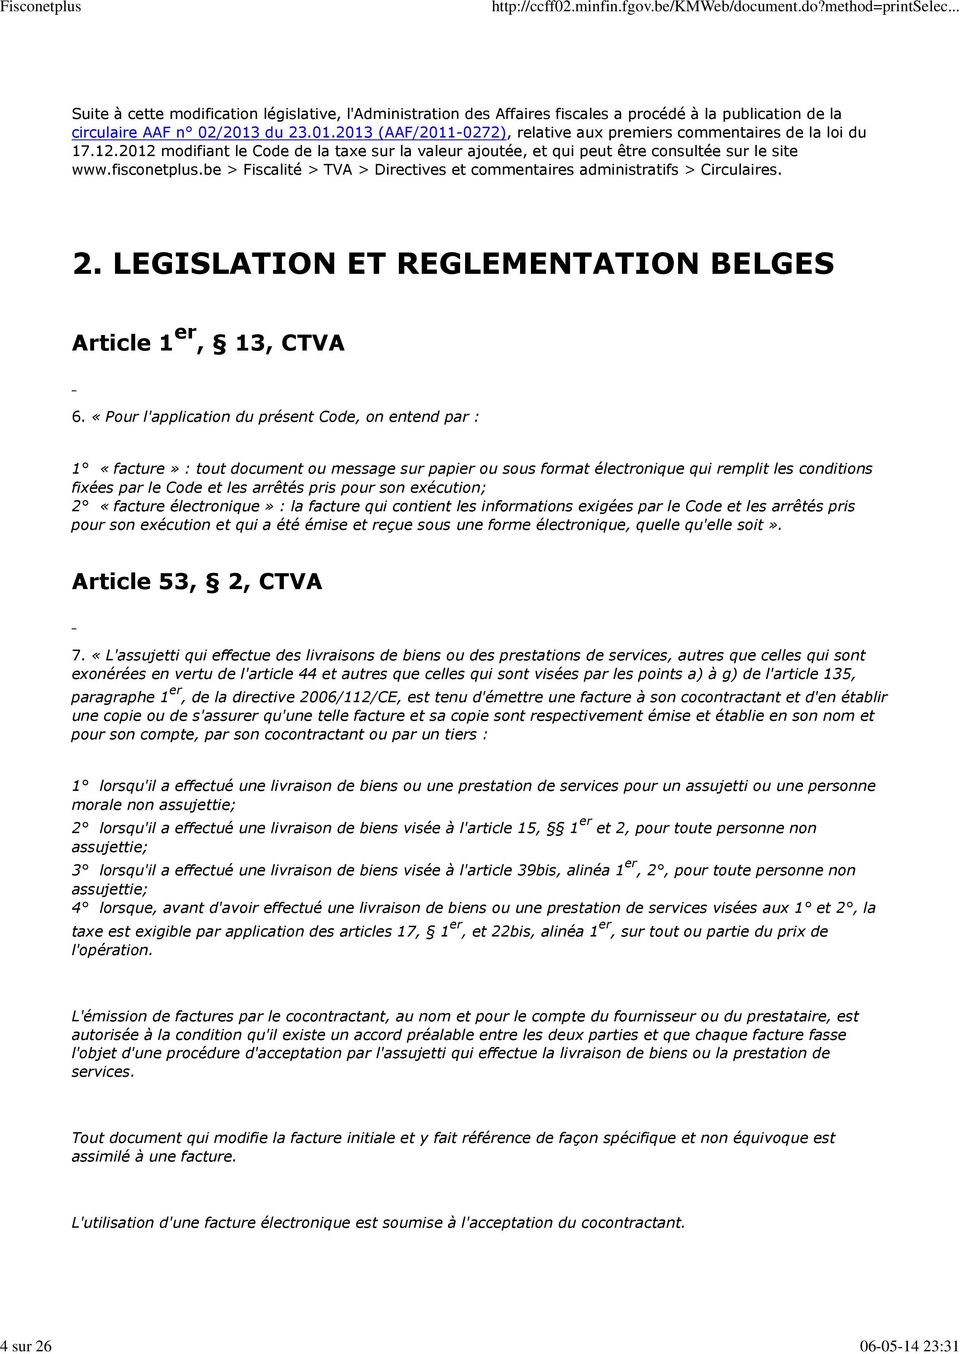 be > Fiscalité > TVA > Directives et commentaires administratifs > Circulaires. 2. LEGISLATION ET REGLEMENTATION BELGES Article 1 er, 13, CTVA 6.